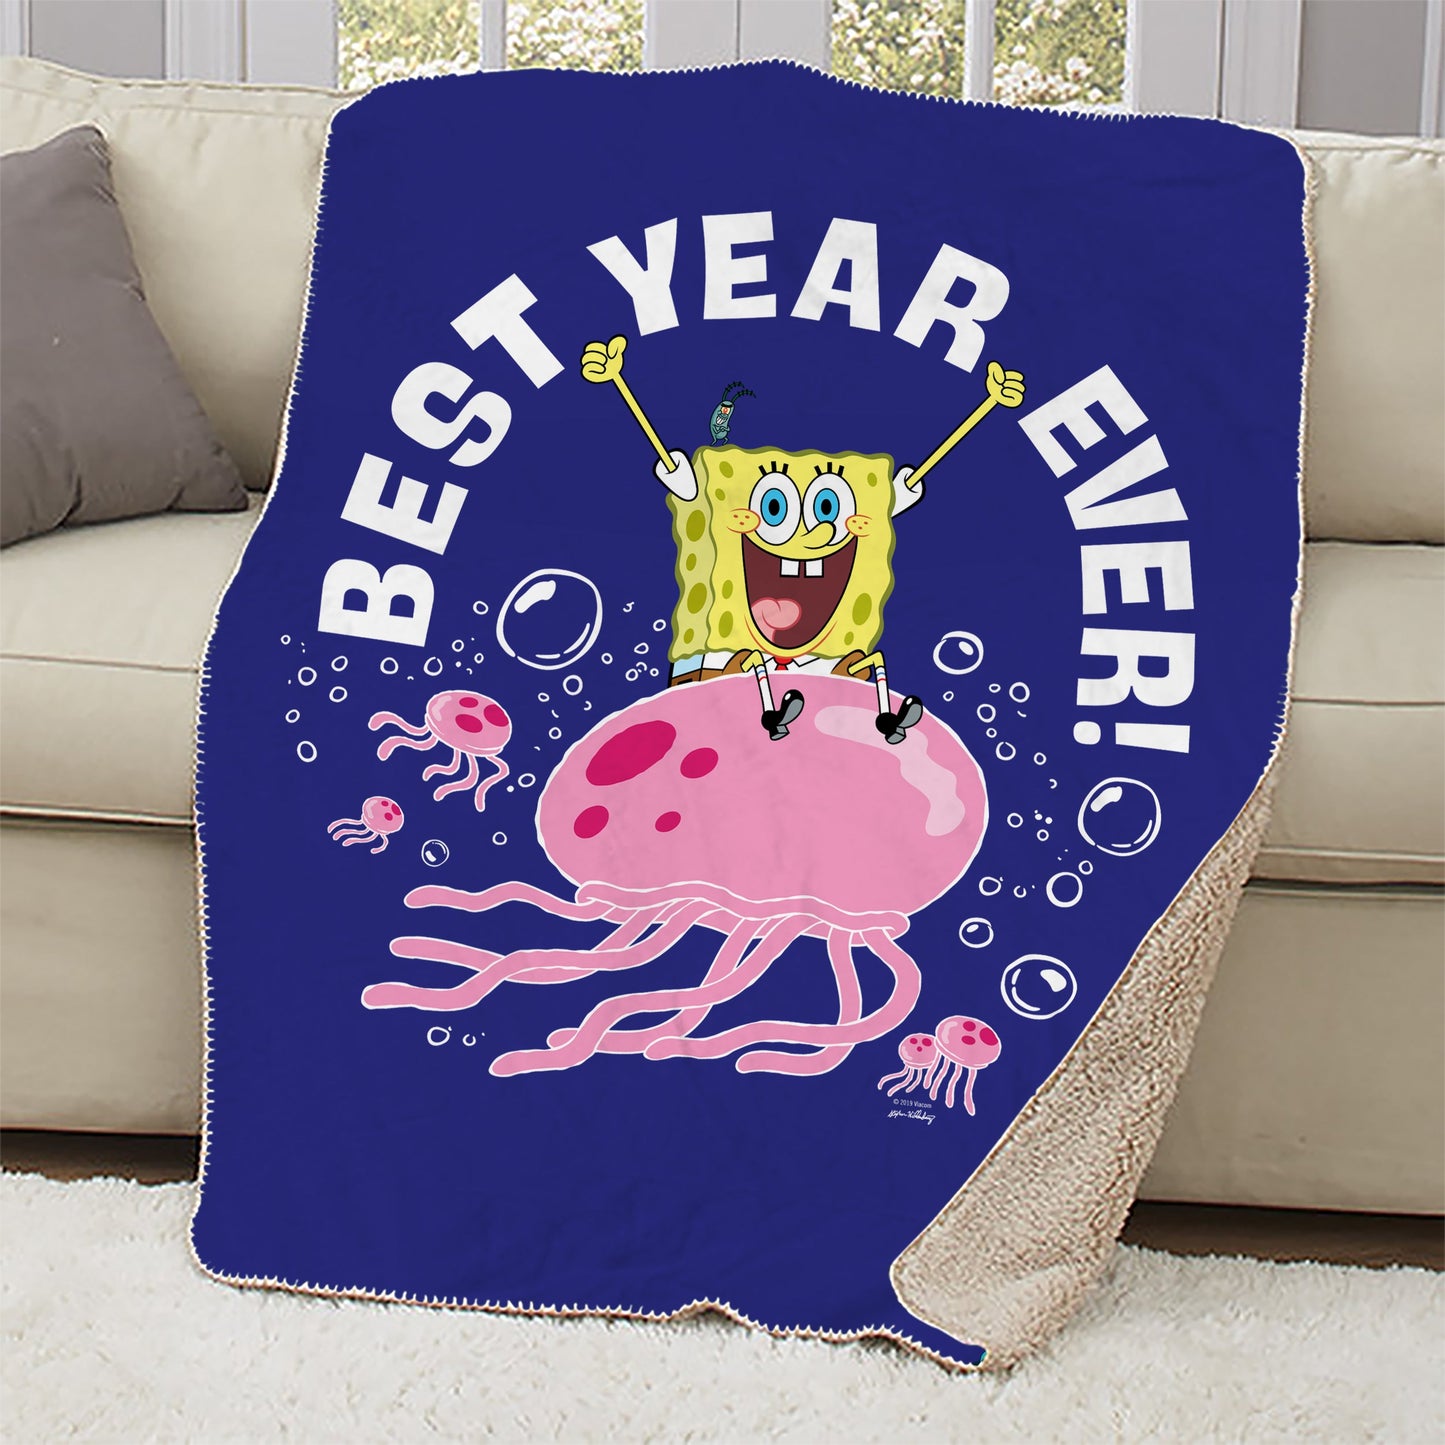 Couverture Sherpa de Bob l'éponge - Best Year Ever Jellyfish